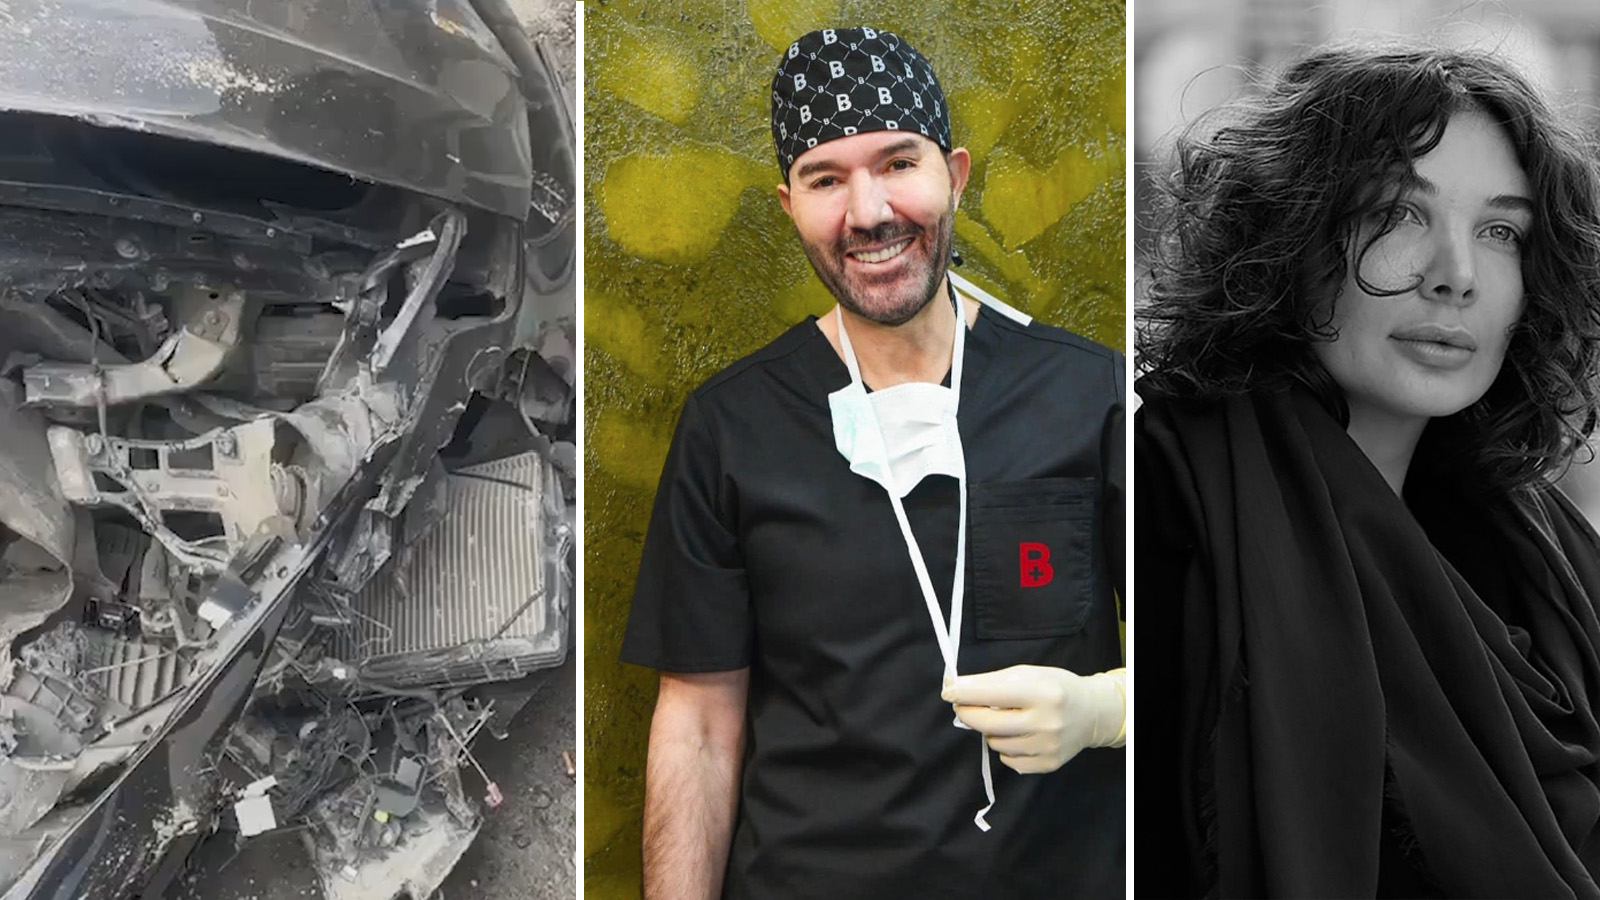 Yazar Eylem Tok ve doktor Bülent Cihantimur'un 16 yaşındaki oğlu 5 kişiyi ezdi: 1 kişi hayatını kaybetti